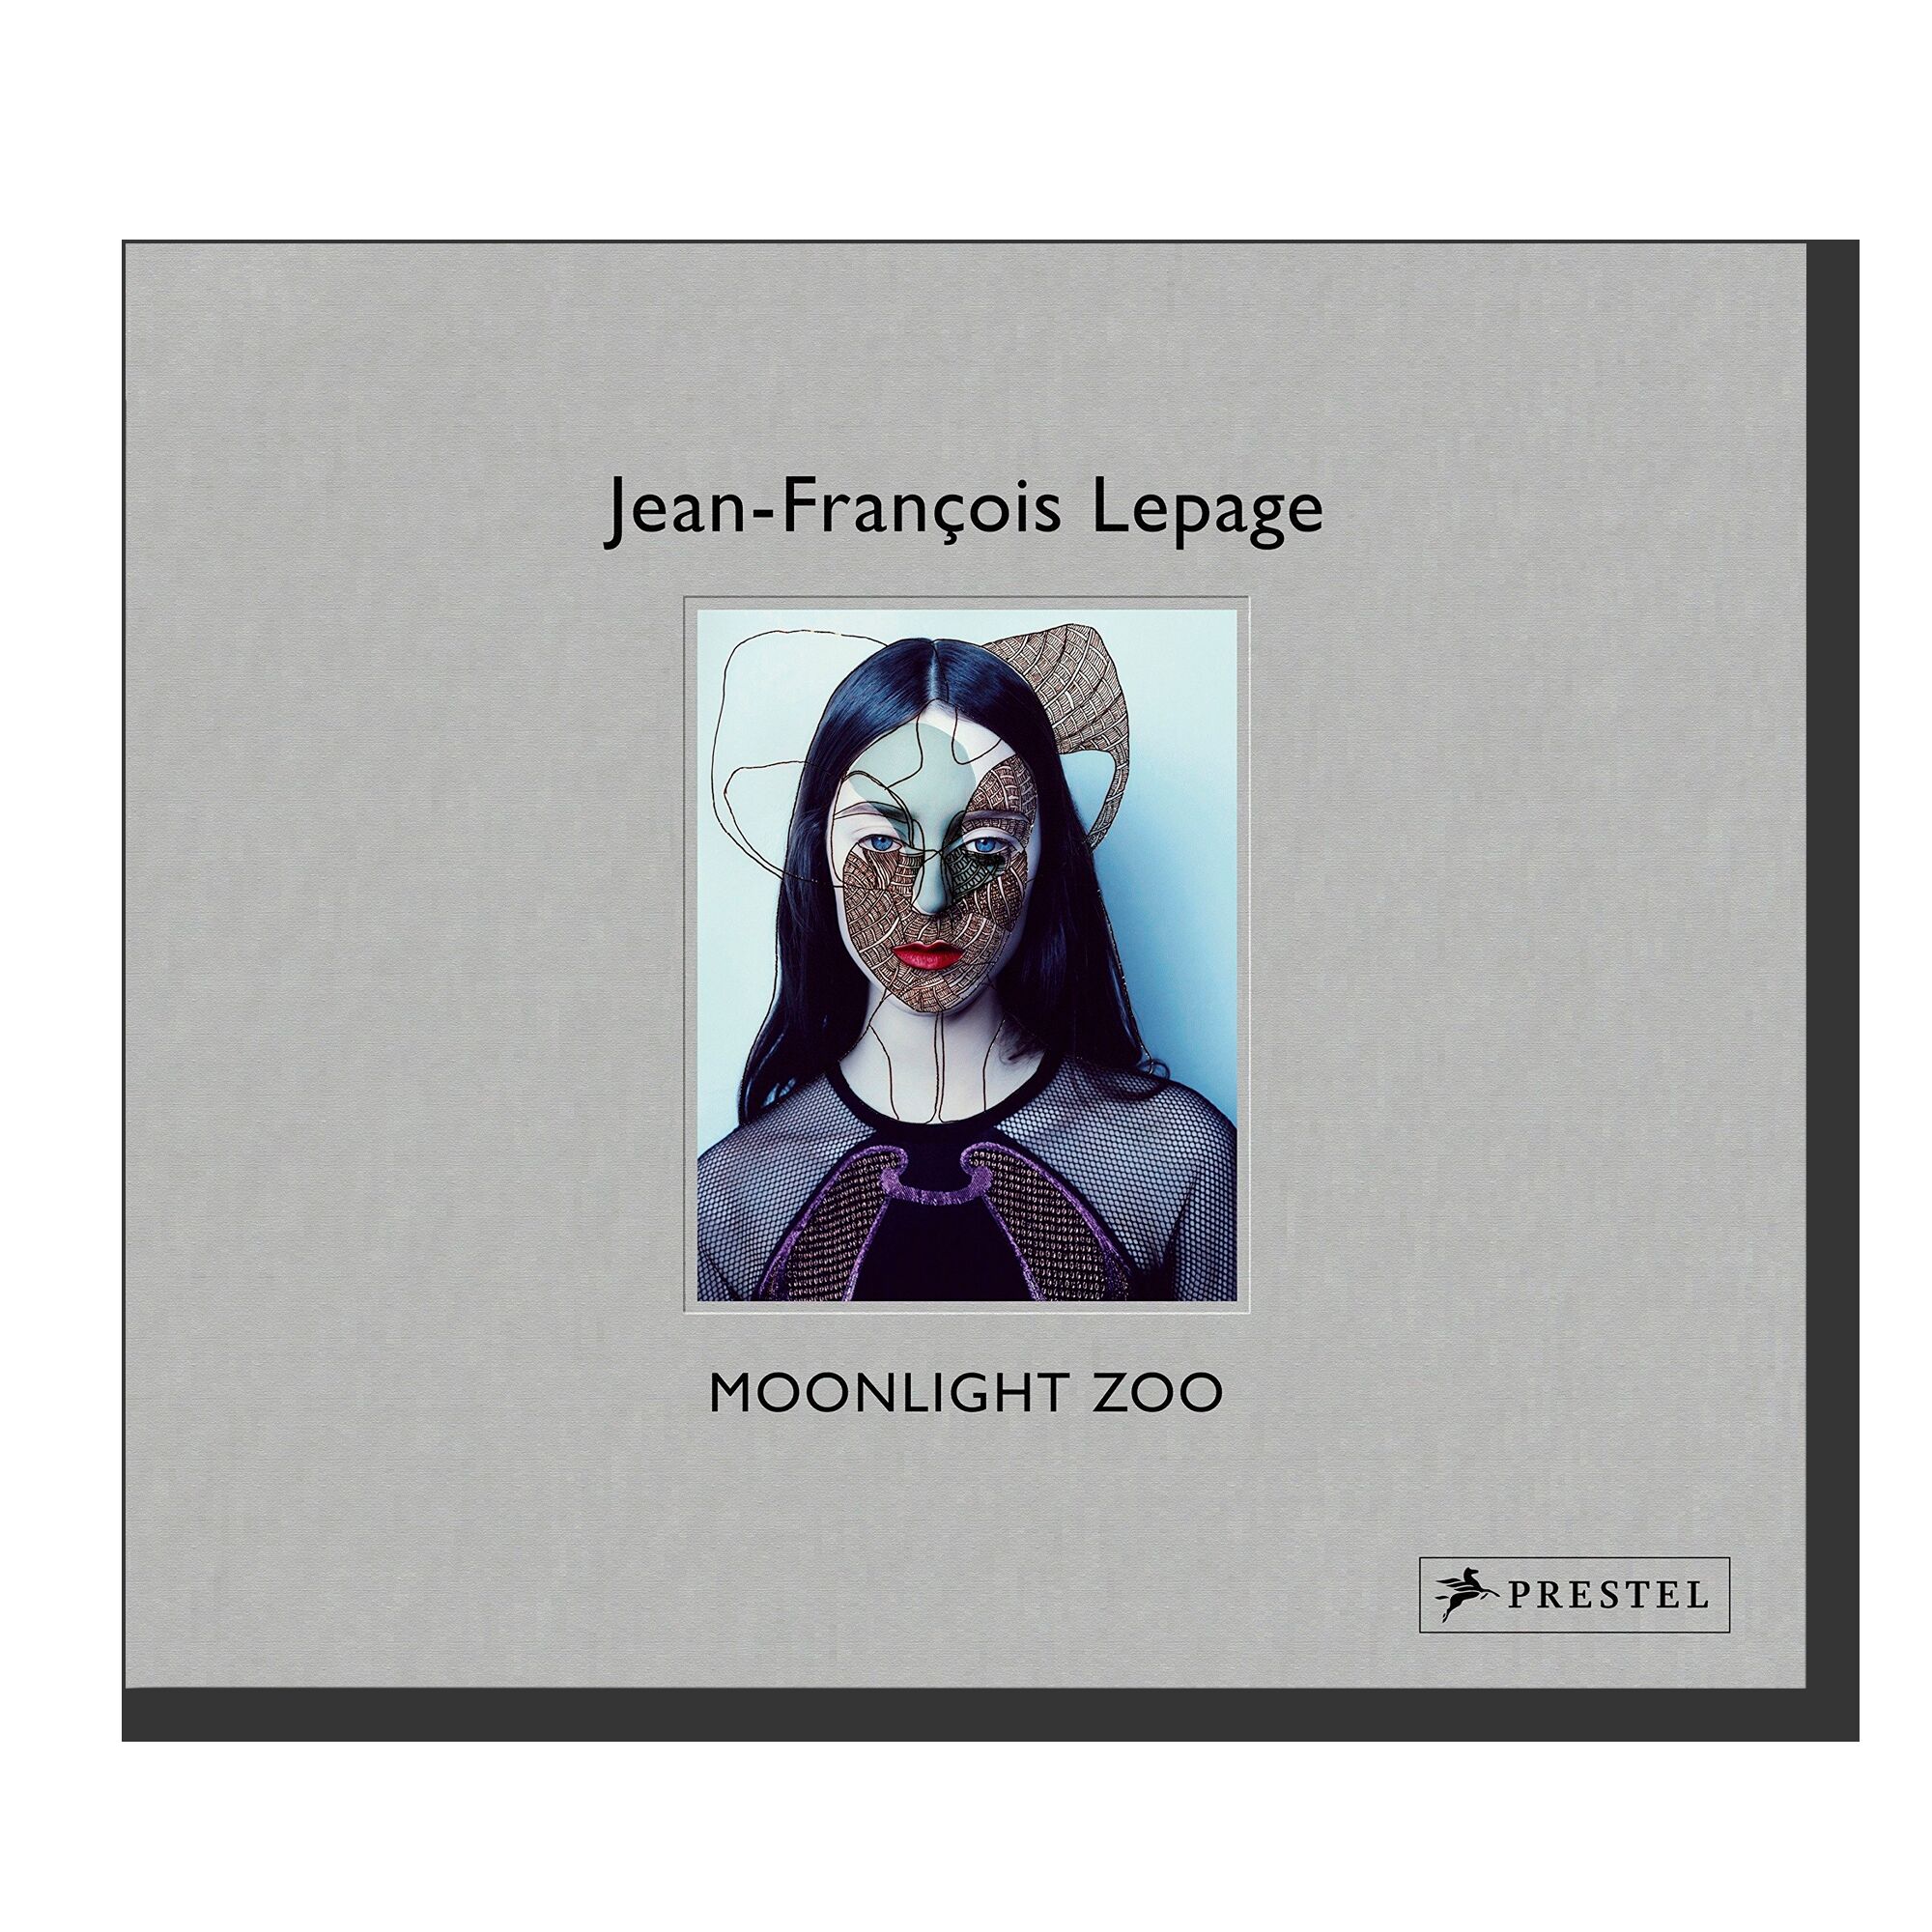 Jean-Francois Lepage: Moonlight Zoo